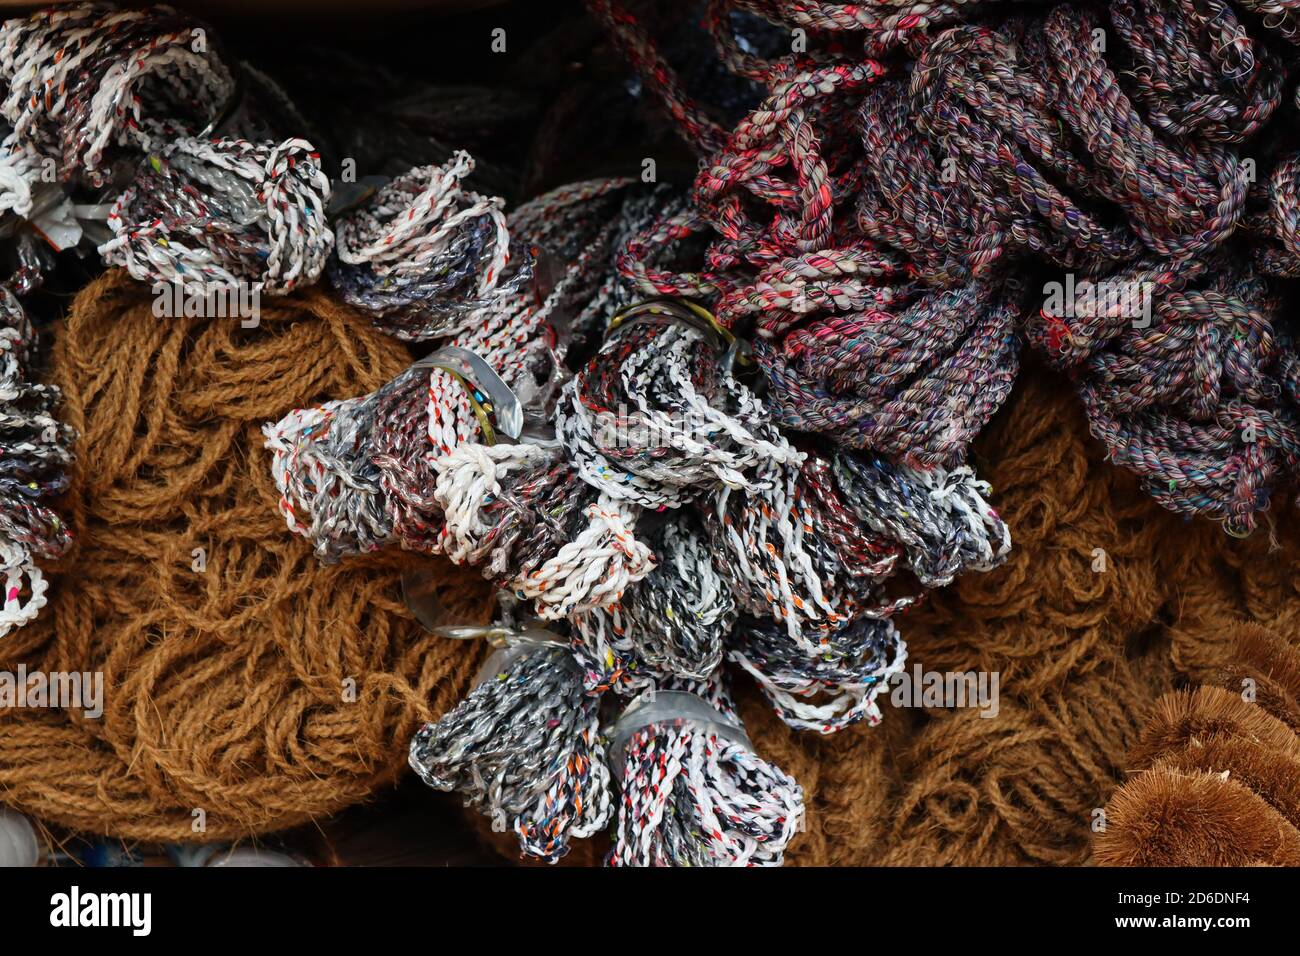 Questa industria artigianale in Sri Lanka, tra cui scope, corde, spazzole, articoli sanitari per la pulizia e corde dure che sono fatte da fibra di cocco. Foto Stock